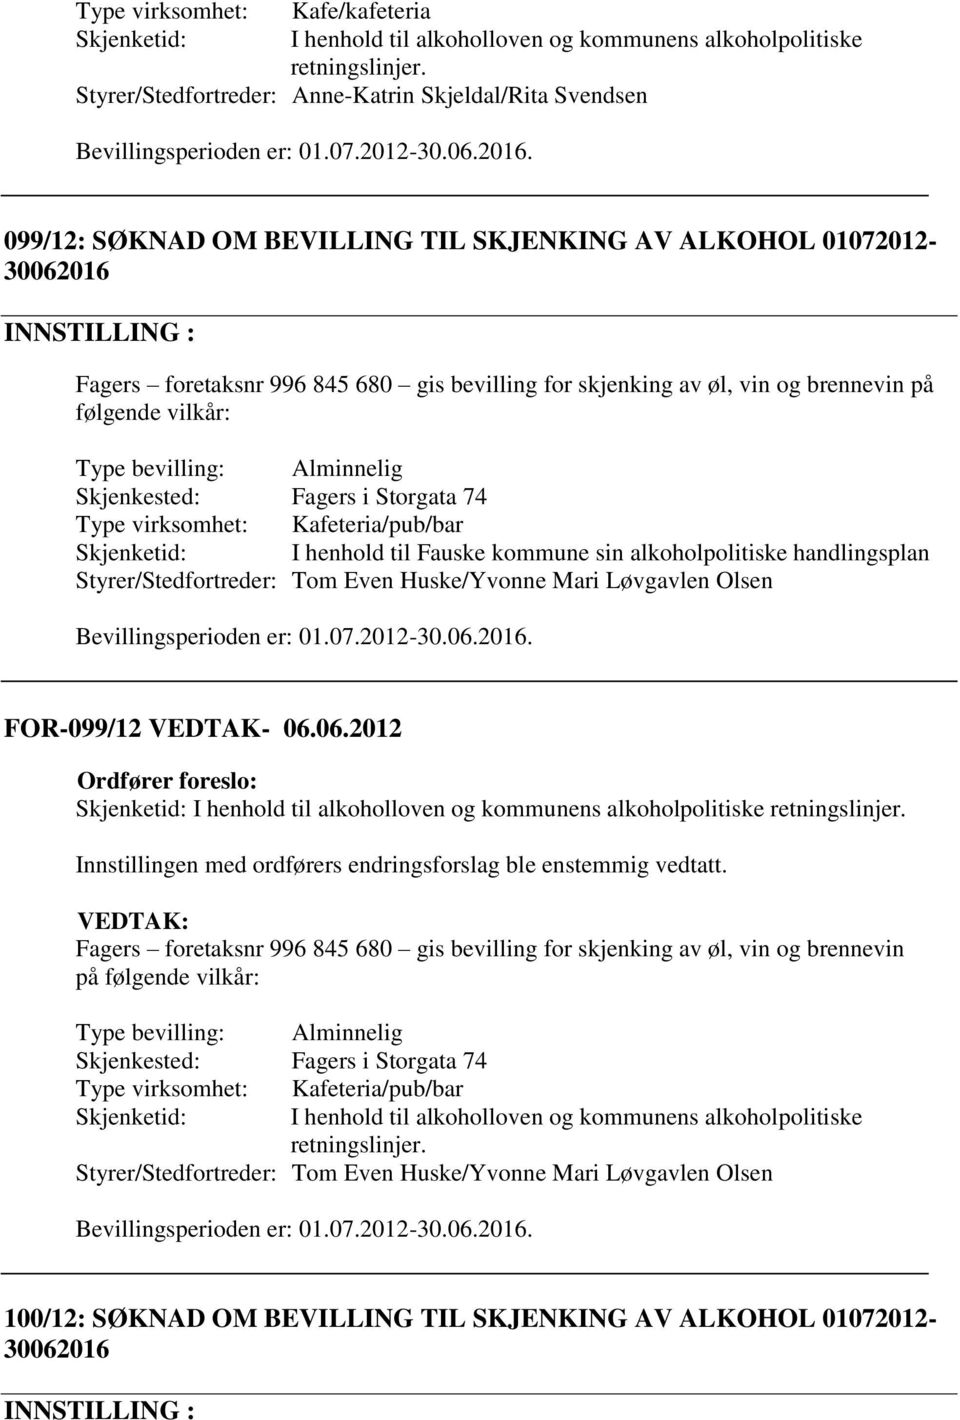 Skjenketid: I henhold til Fauske kommune sin alkoholpolitiske handlingsplan Styrer/Stedfortreder: Tom Even Huske/Yvonne Mari Løvgavlen Olsen FOR-099/12 VEDTAK- 06.